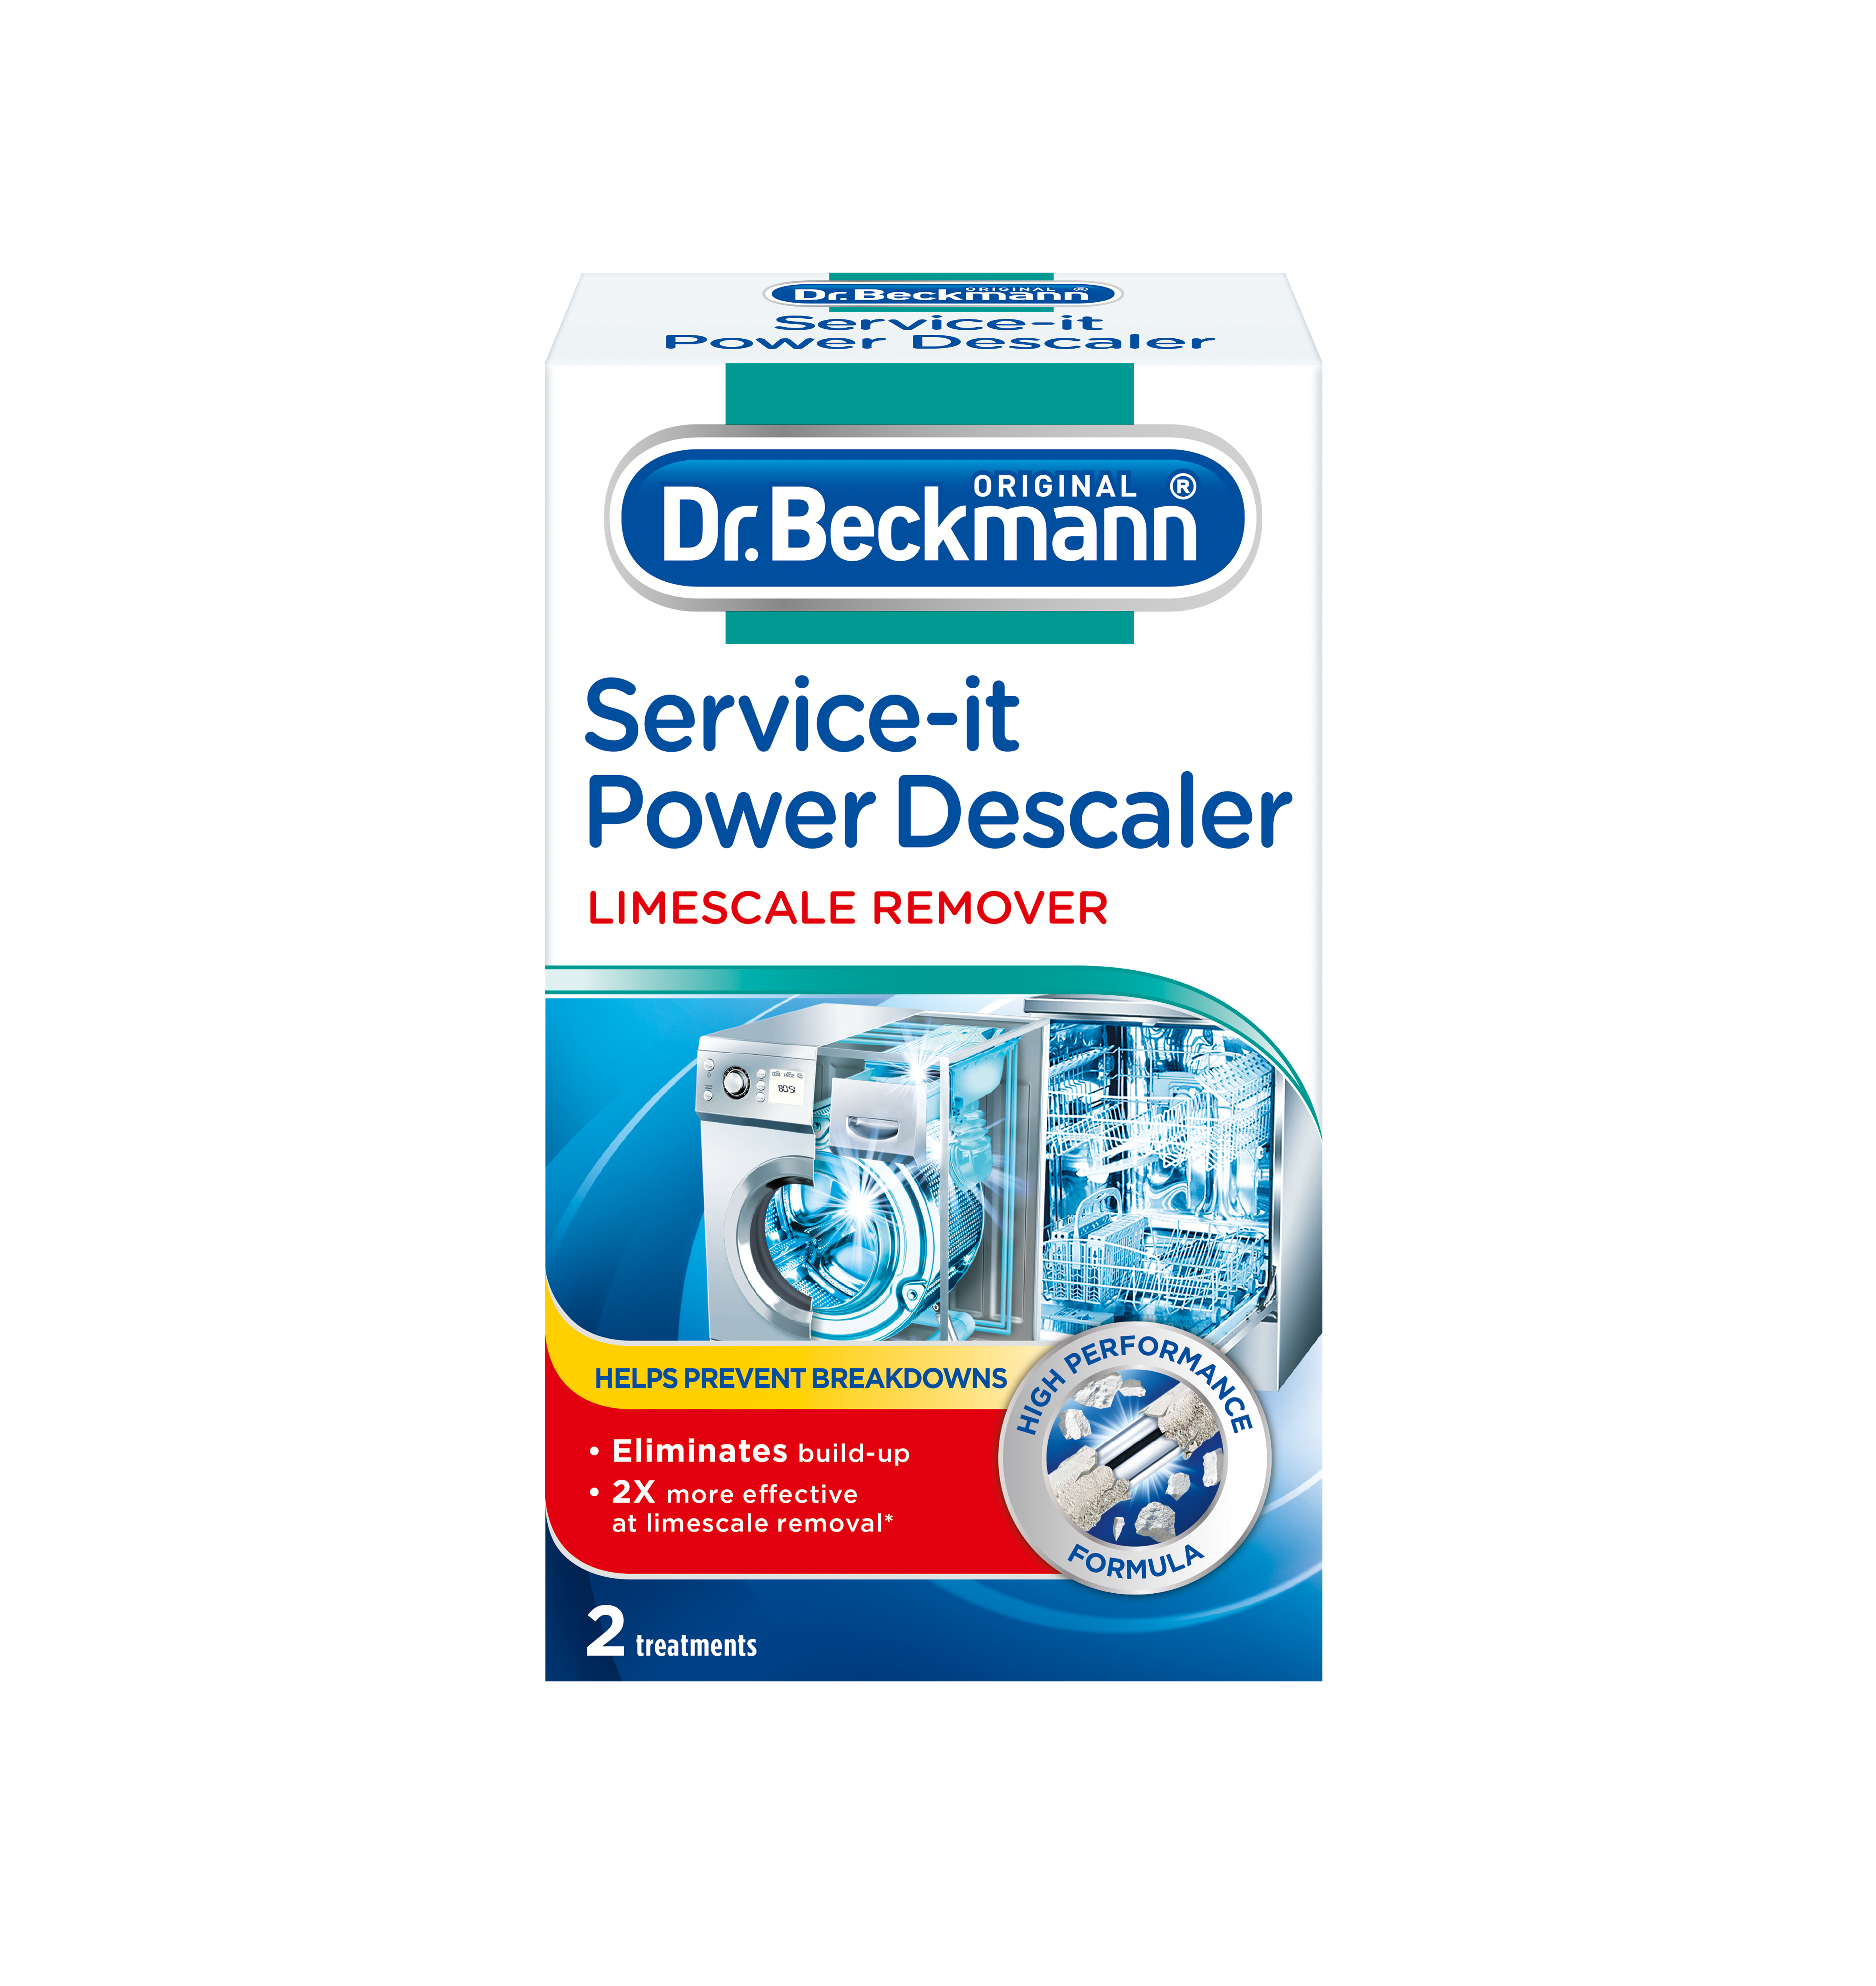 Service-it Deep Clean Washing Machine Cleaner 250g - Dr. Beckmann